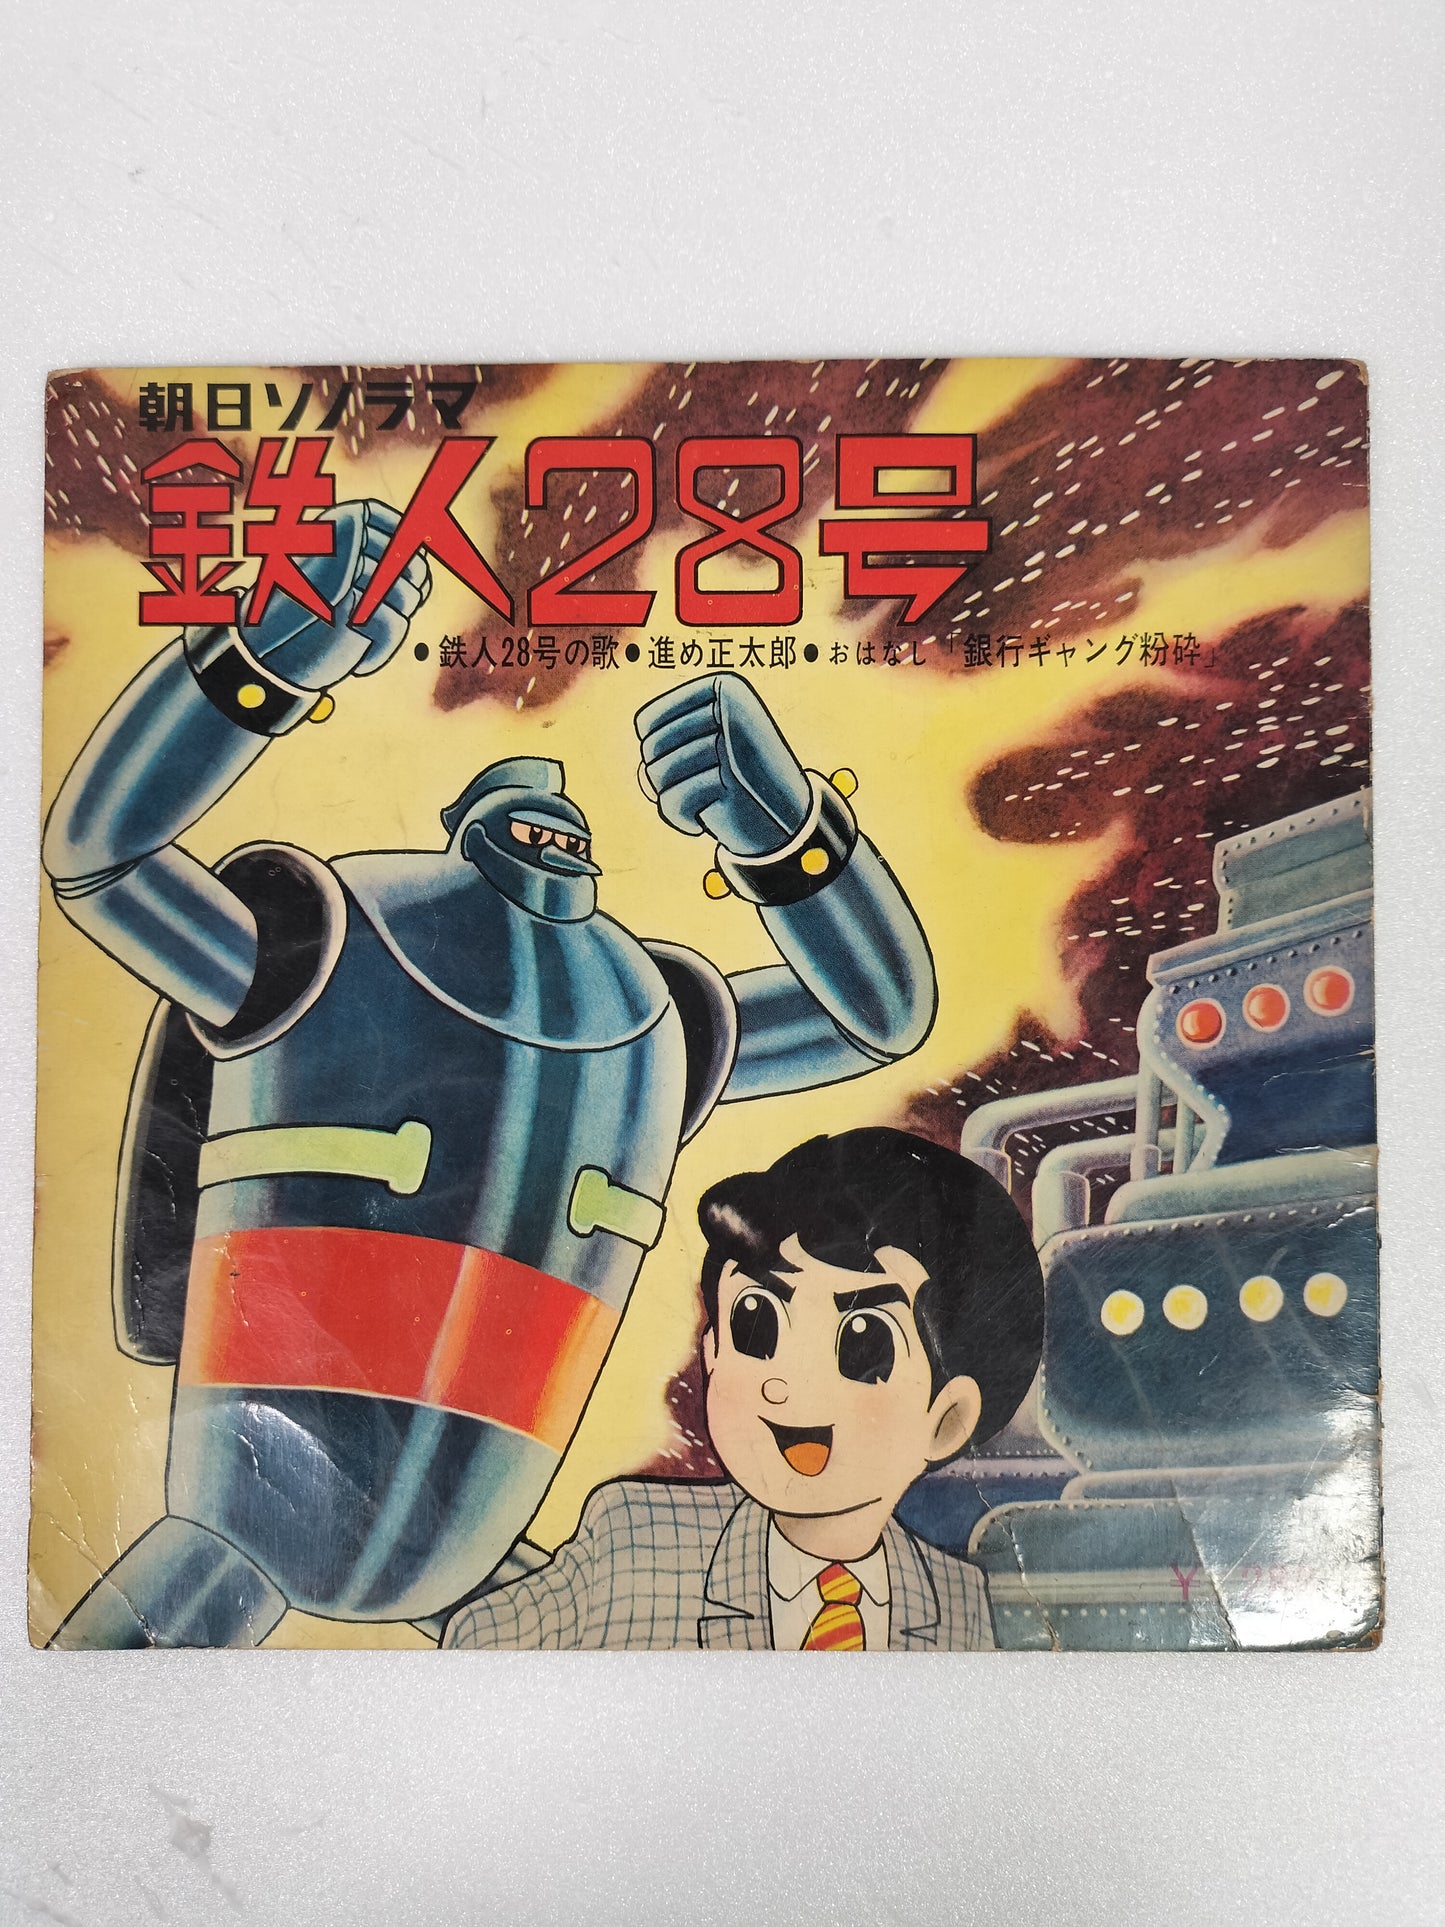 Tetsujin 28-go Tetsujin 28-go no Uta Song Susumu Shotaro Glico Almond Chocolate Japanese TV Manga Anime Sonosheet Flexi disc vintage